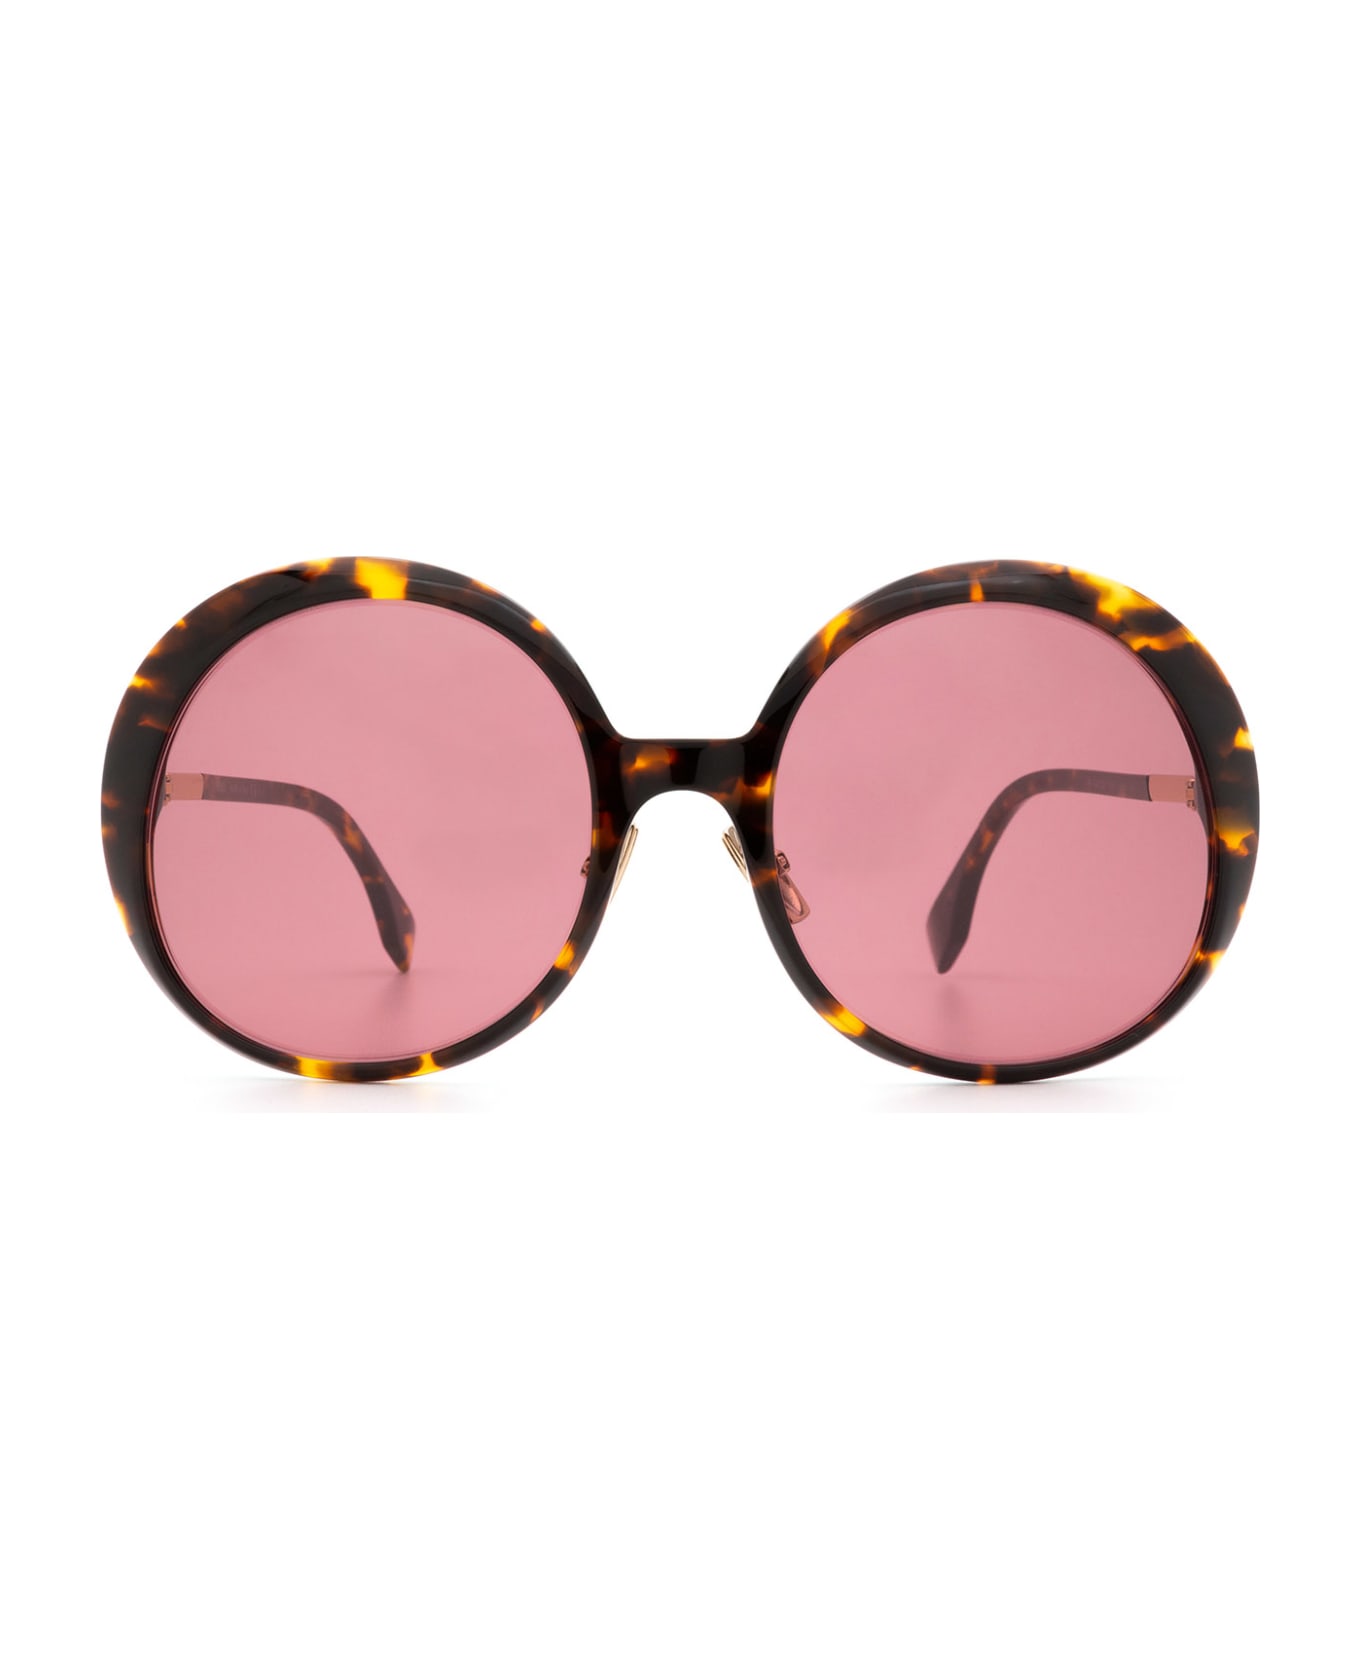 Fendi Eyewear Ff 0430/s Dark Havana Sunglasses - Dark Havana